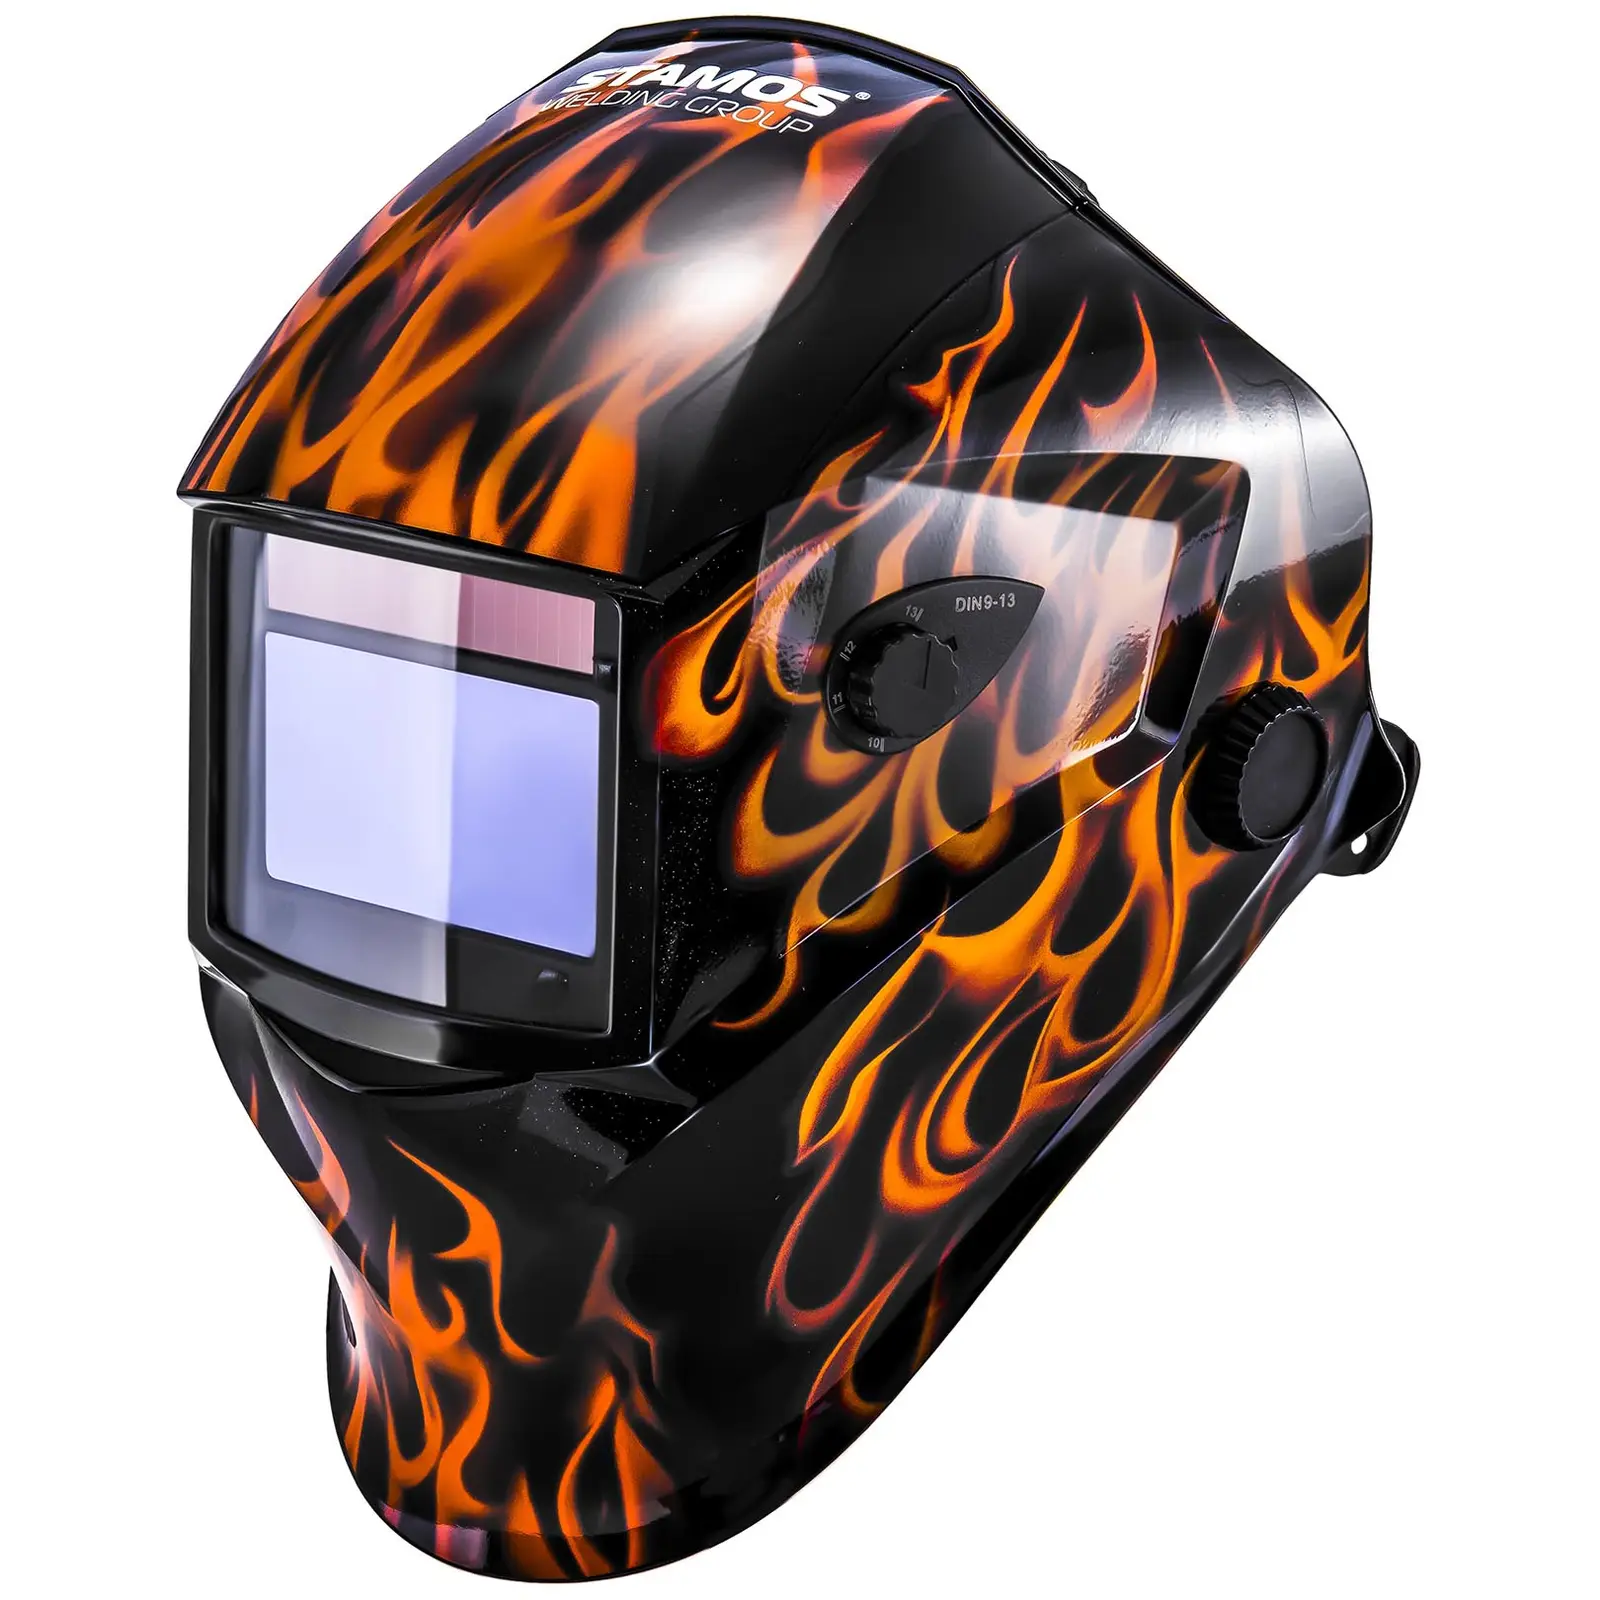 Welding helmet – Firestarter 500 - advanced series